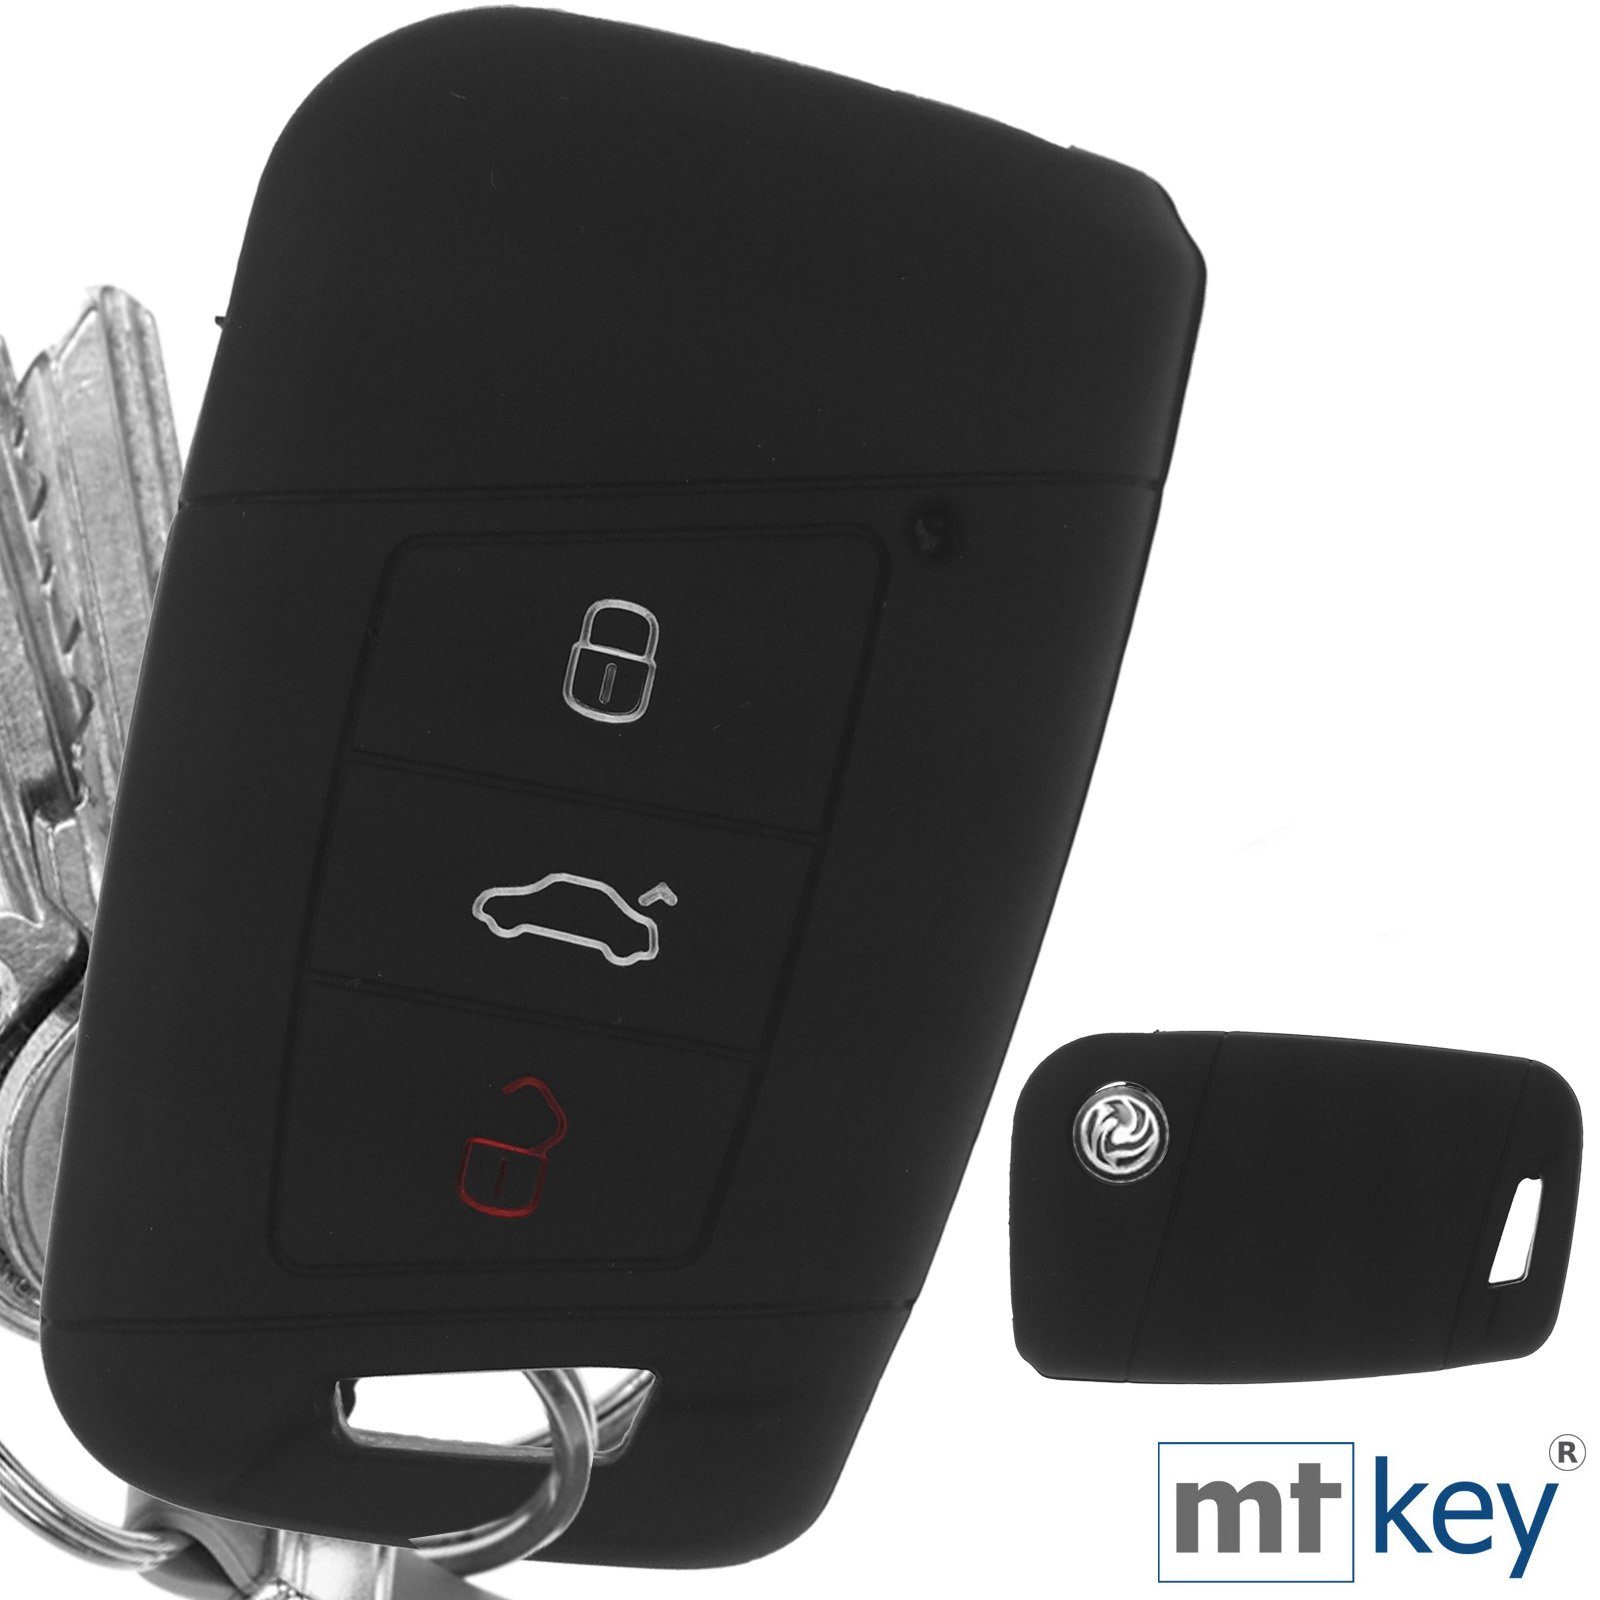 mt-key Schlüsseltasche Autoschlüssel Arteon Kodiaq Silikon KEYLESS Schlüsselband, für Softcase SMARTKEY 3 Schutzhülle mit Schwarz Skoda B8 Tasten VW Passat